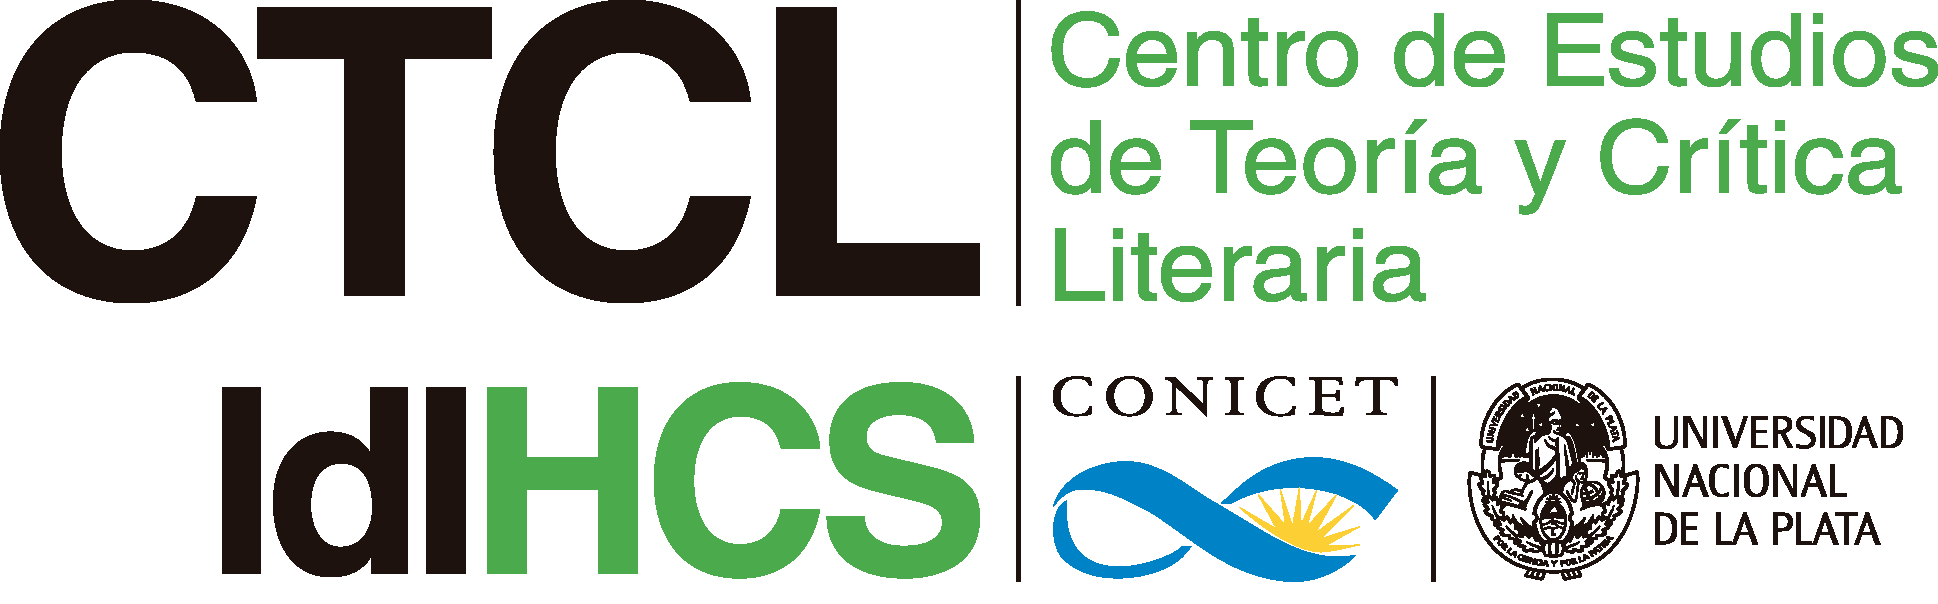 Centro de Estudios de Teoría y Crítica Literaria